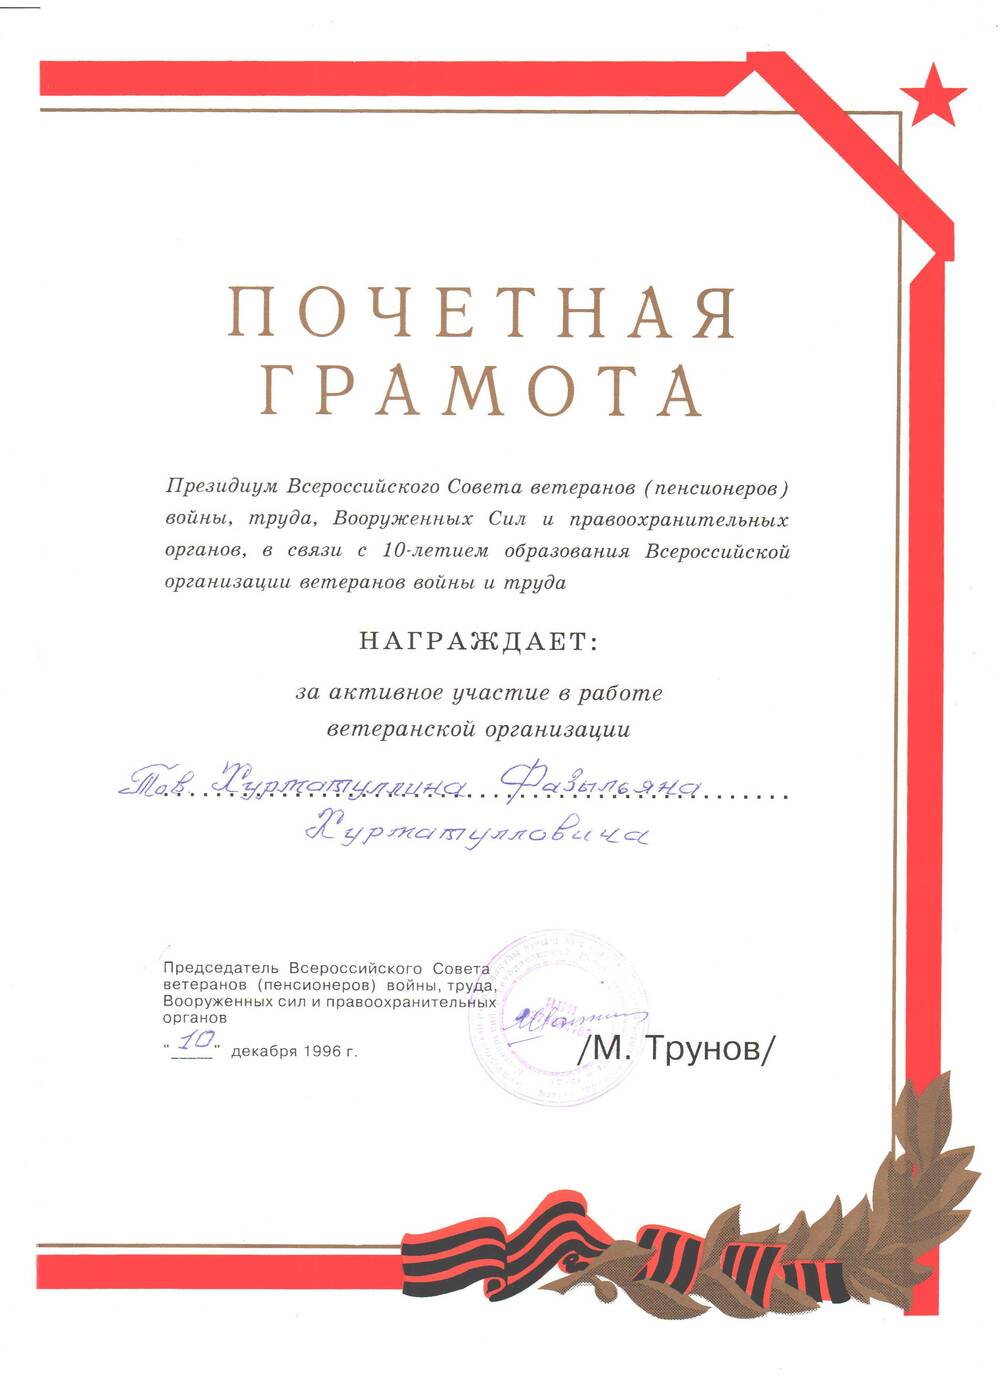 Грамота — почетная Президиума Всероссийского Совета ветеранов Хурматуллину Ф.Х.за активное участие в работе организации. 10 декабря 1996г.